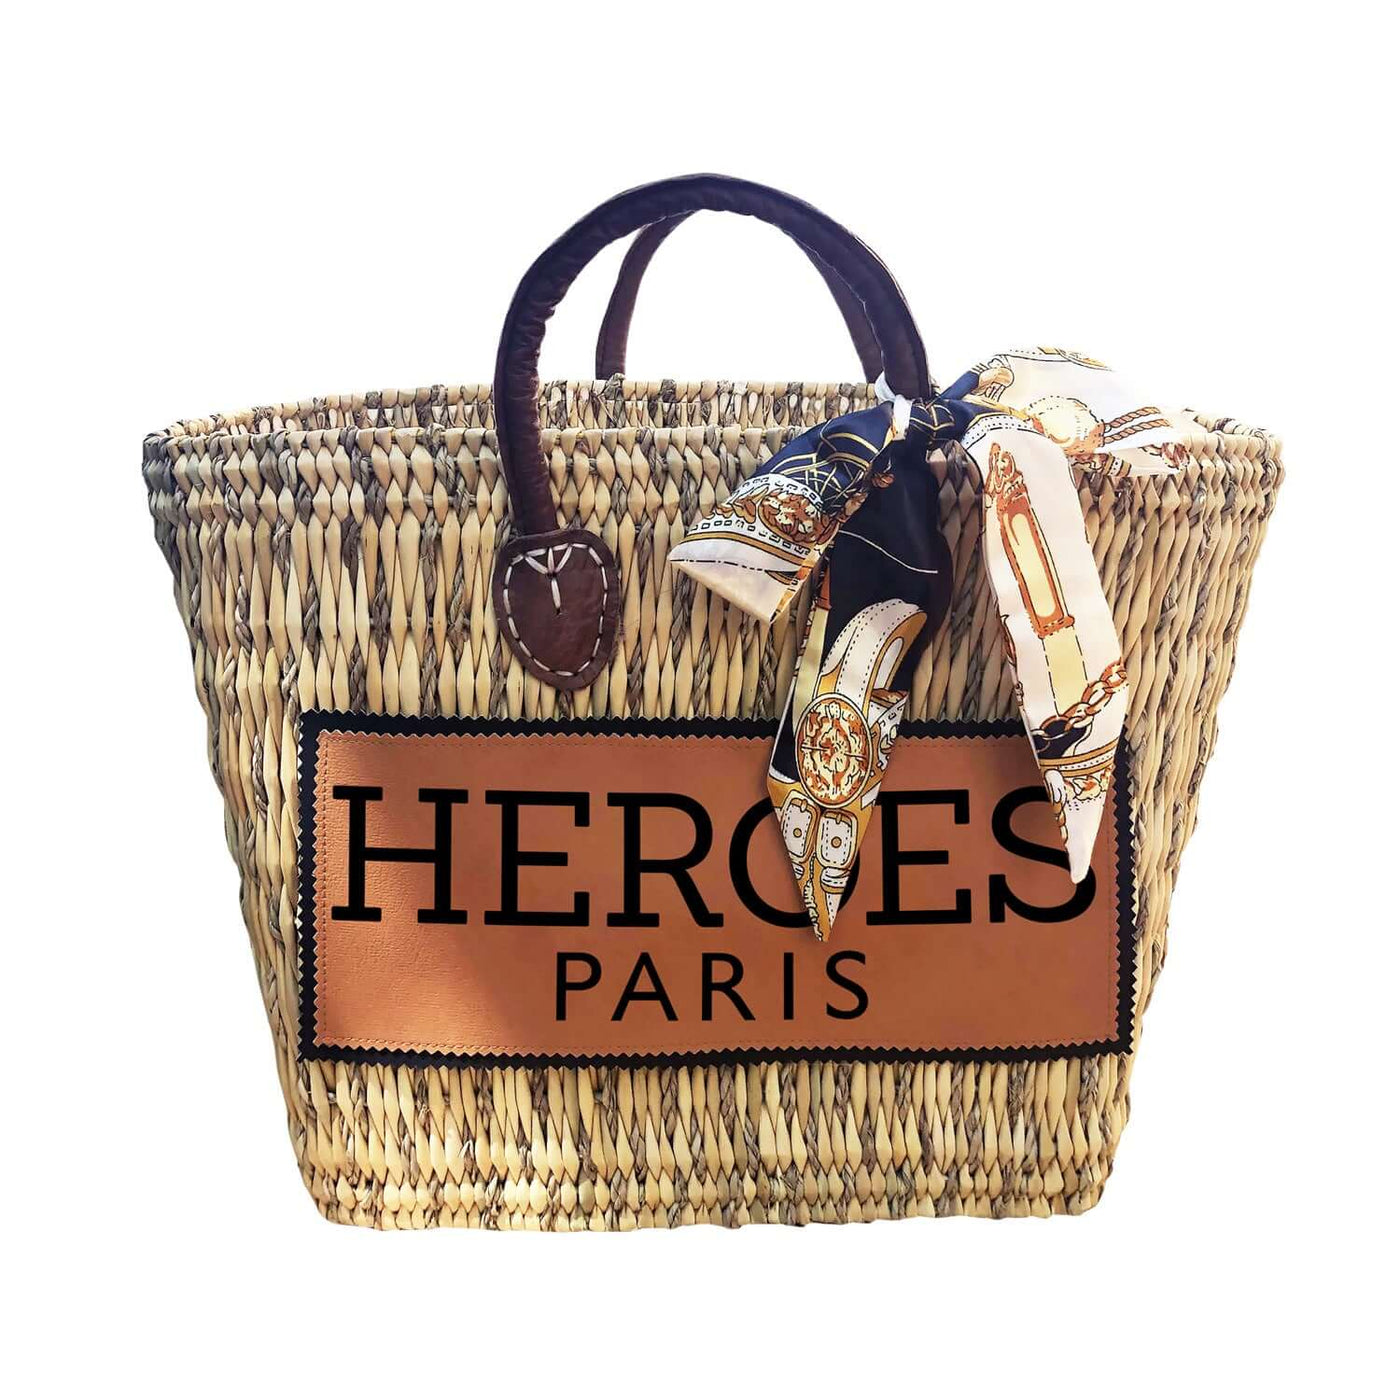 Mykonos Bag "Heroes" - natural